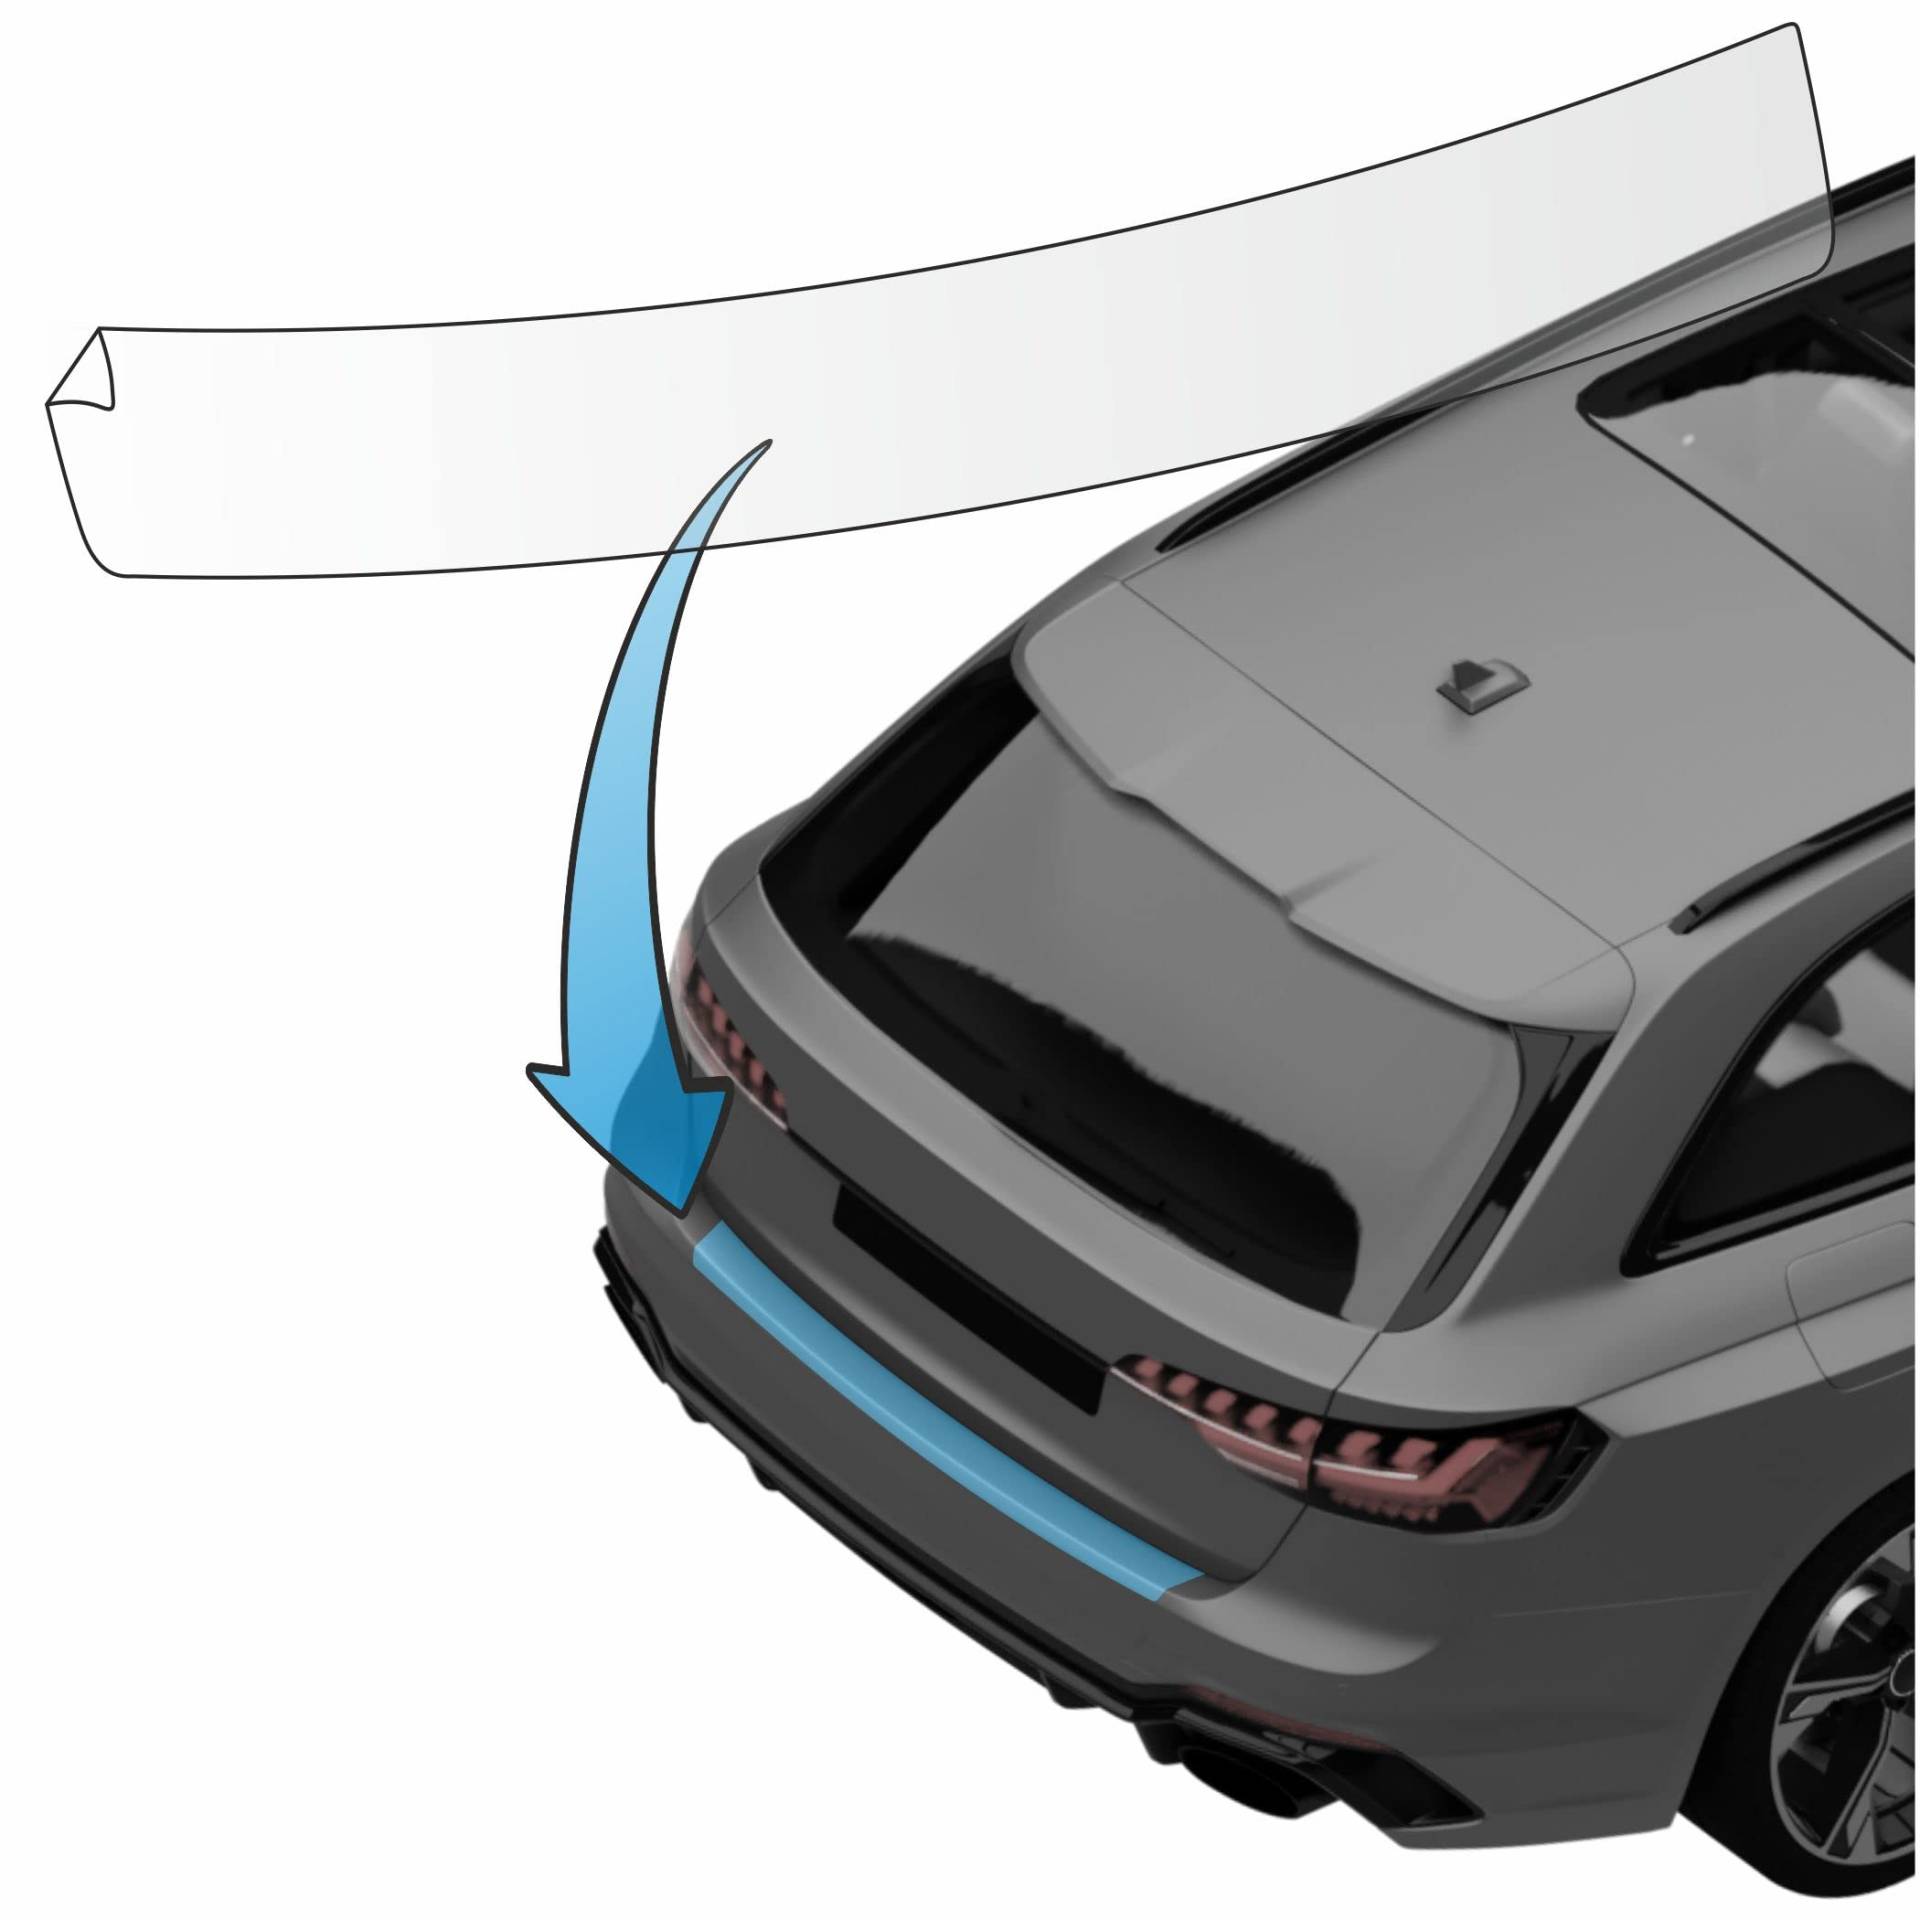 MisterLacky – Lackschutzfolie mit Rakel als Ladekantenschutz Folie passend für Renault Laguna Grandtour (III) T,BJ 04/2008-2015 in transparent (320µm) von Lackschutzshop